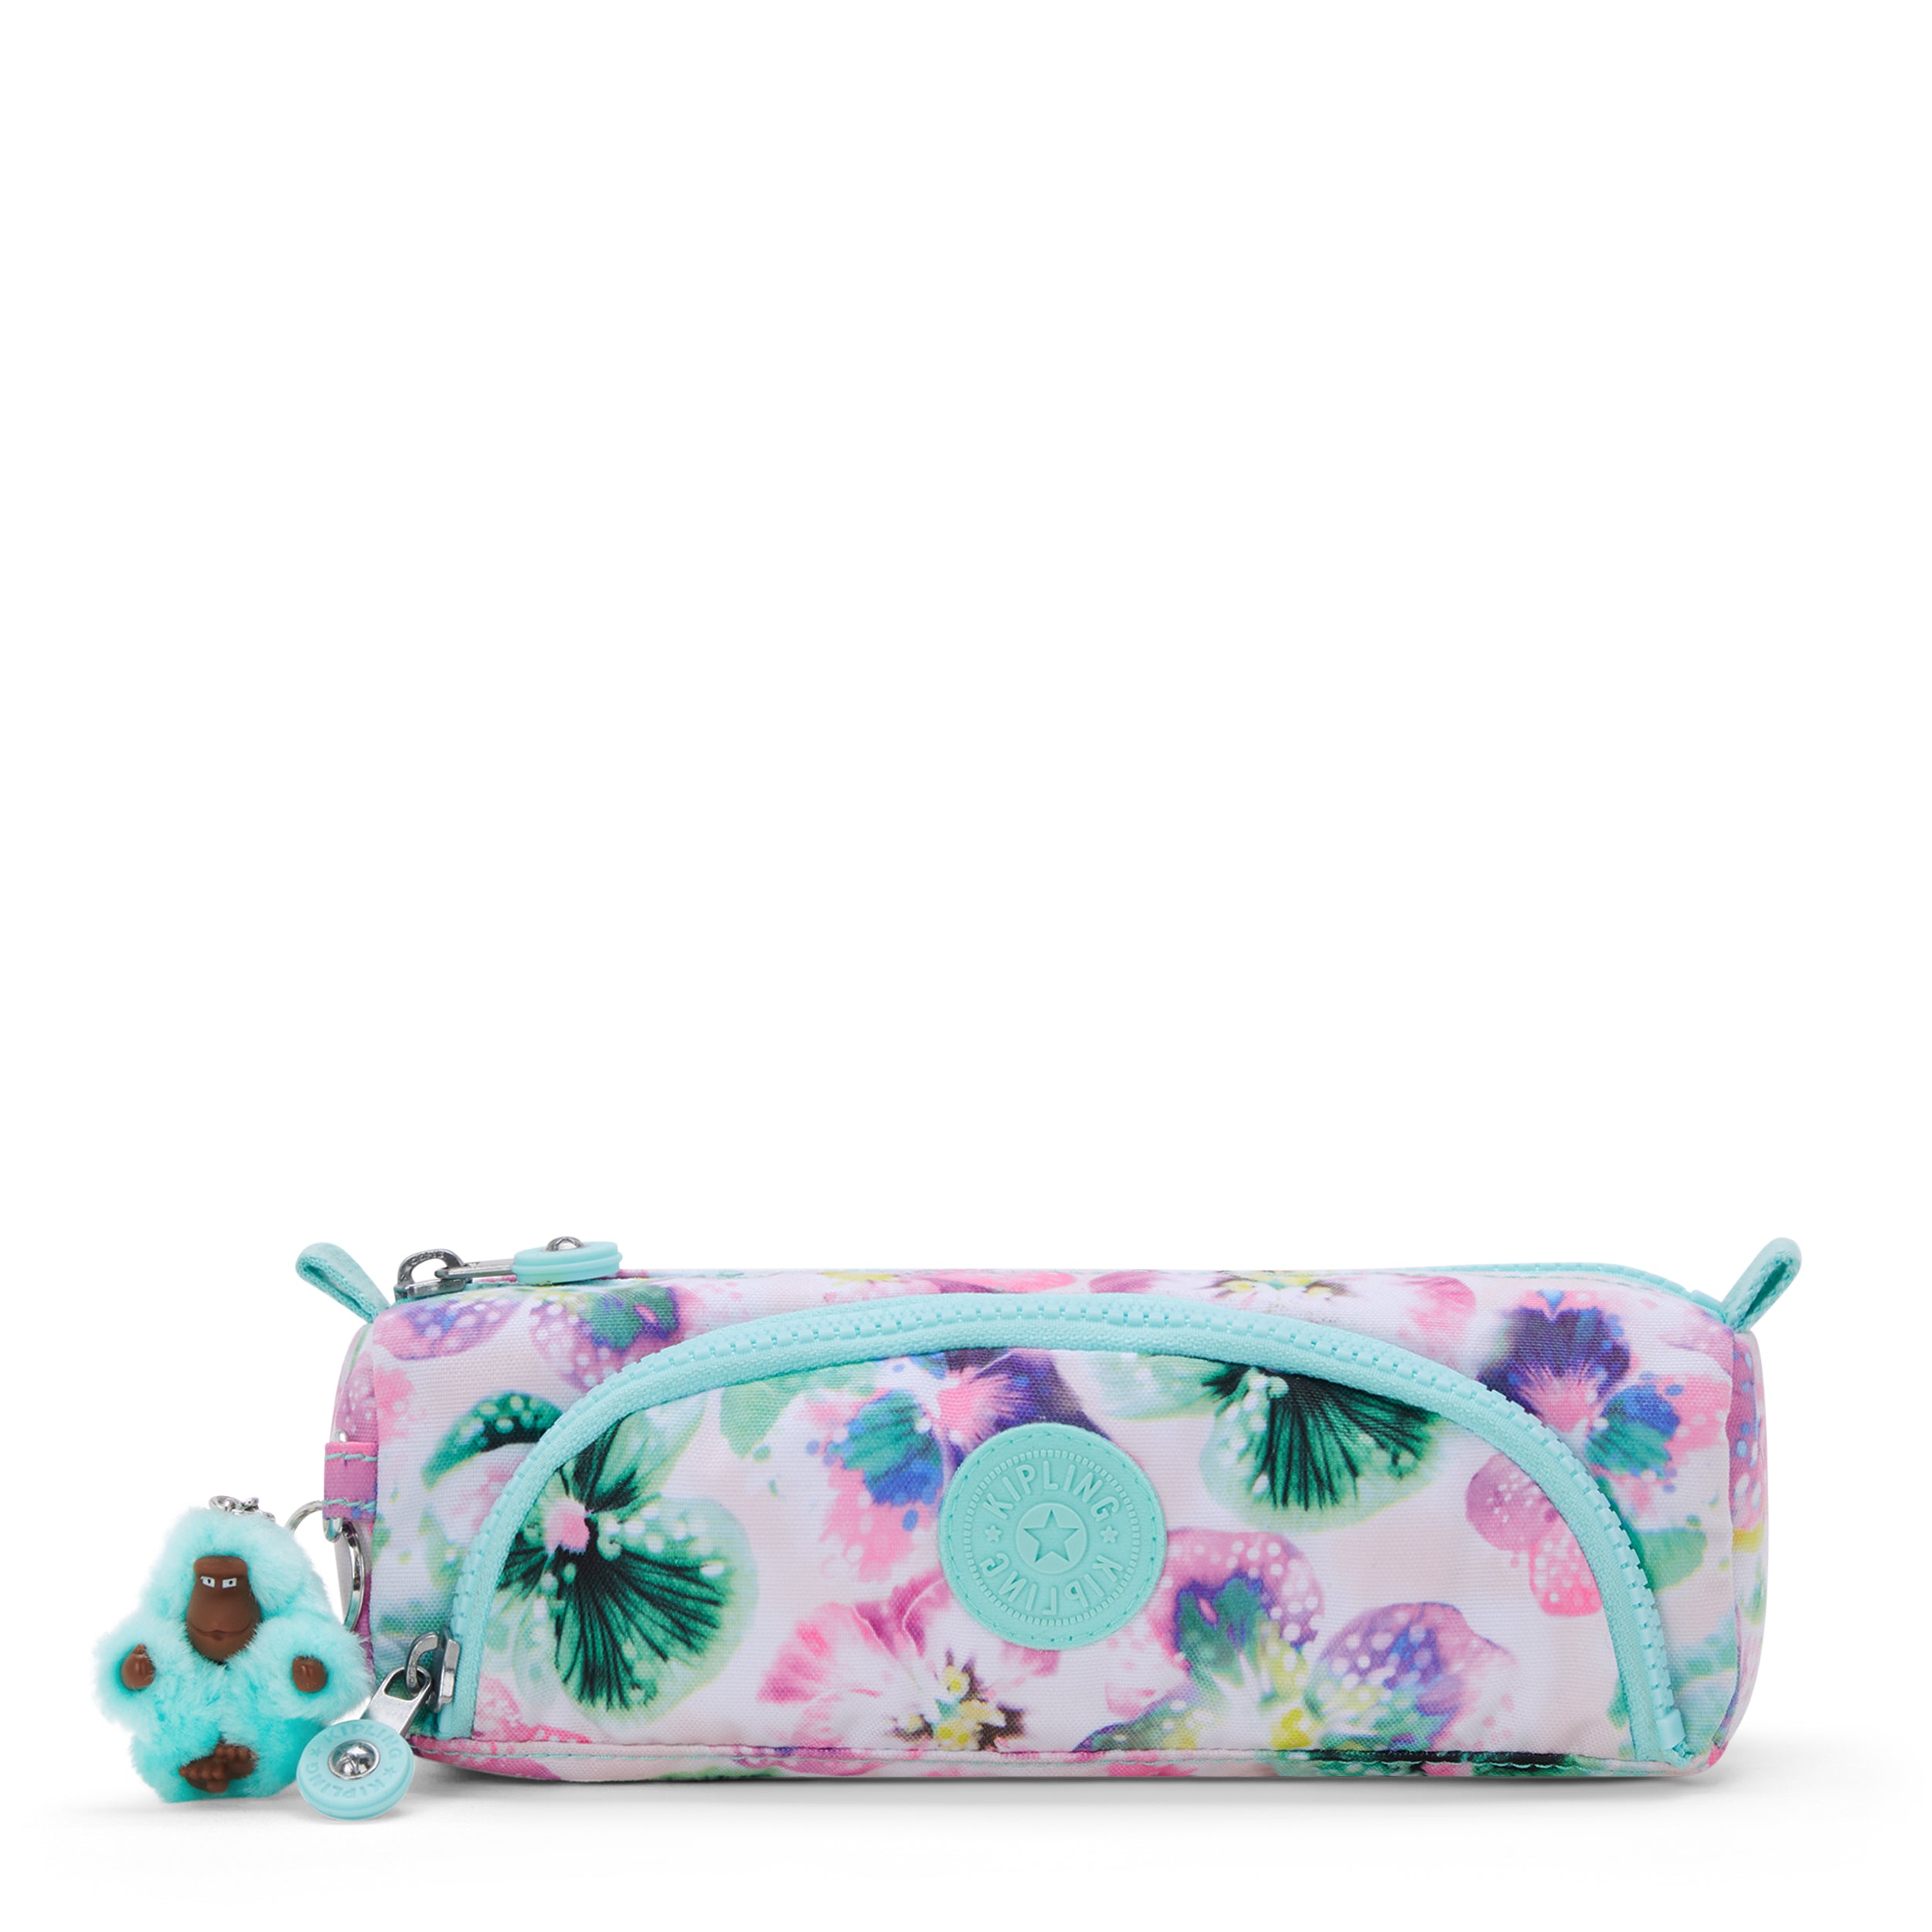 KIPLING-Cute-Medium pencase-Aqua Blossom-I3330-7EC